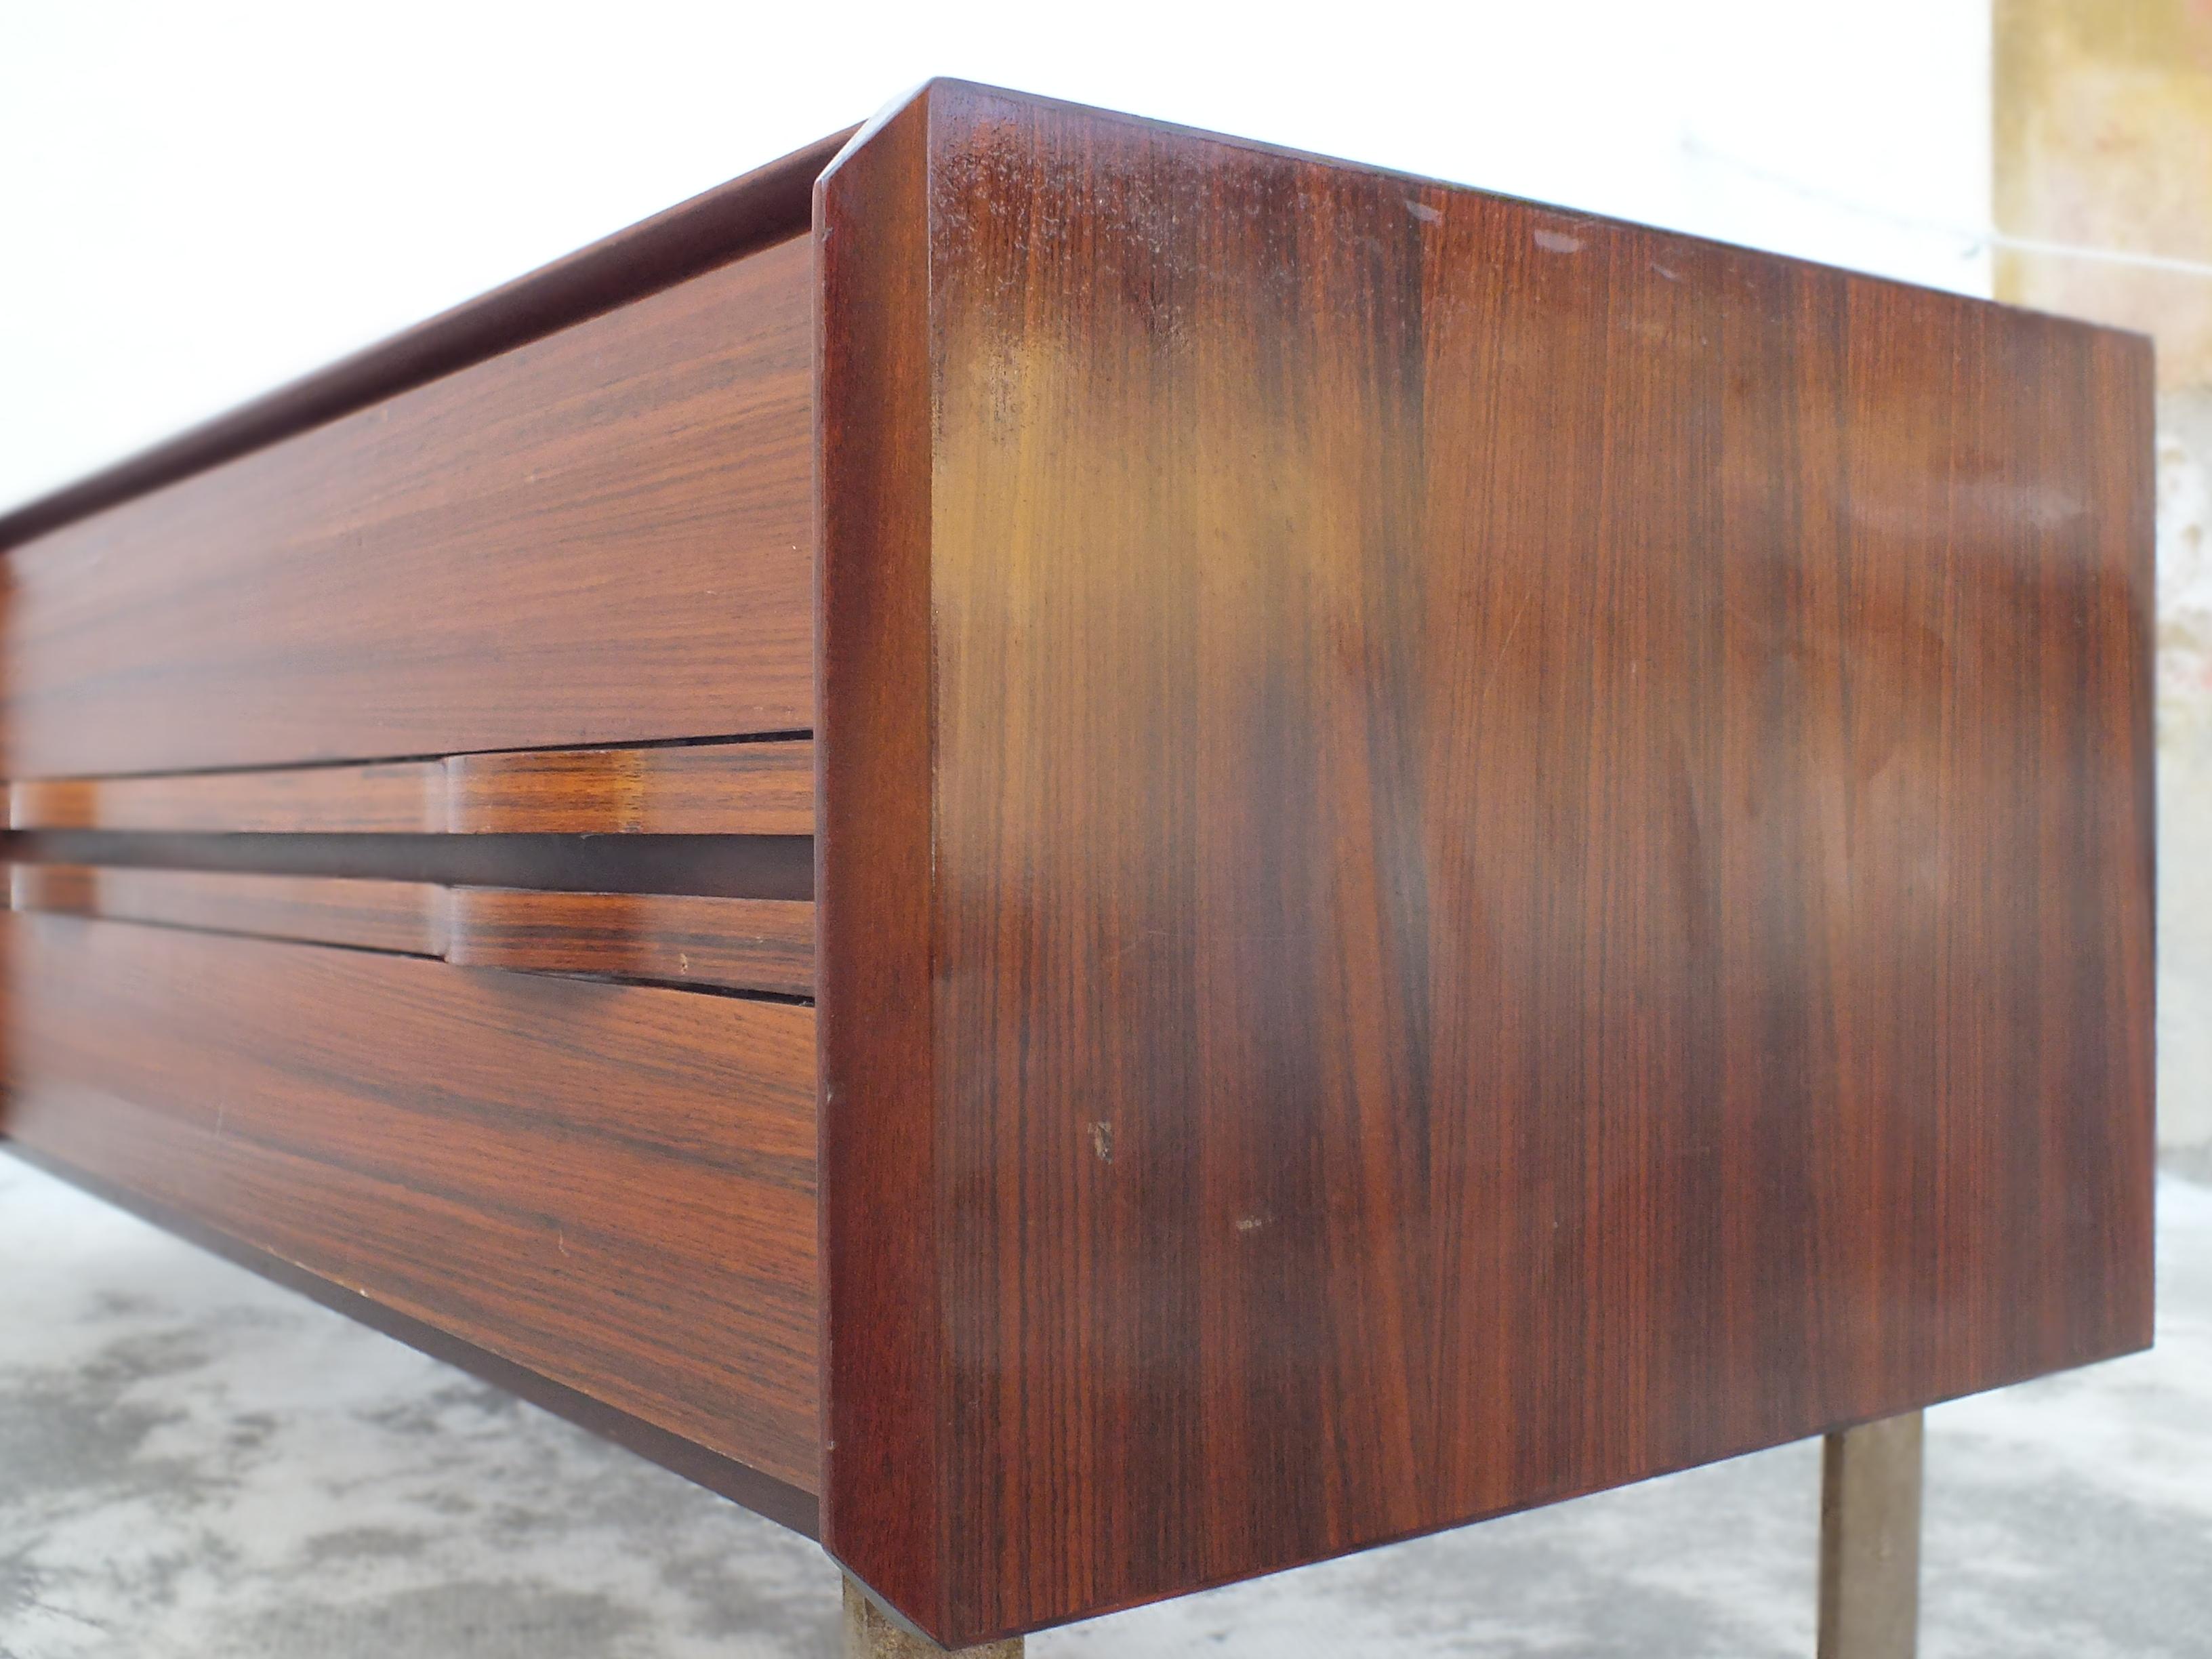 La Permanente meuble Cantu' Italien  Wahrscheinlich Frattini Gianfranco Design minimalistische Anrichte mit nur der minderwertigen und eleganten Teil, guter Zustand mit Zeichen der Zeit in das Holz